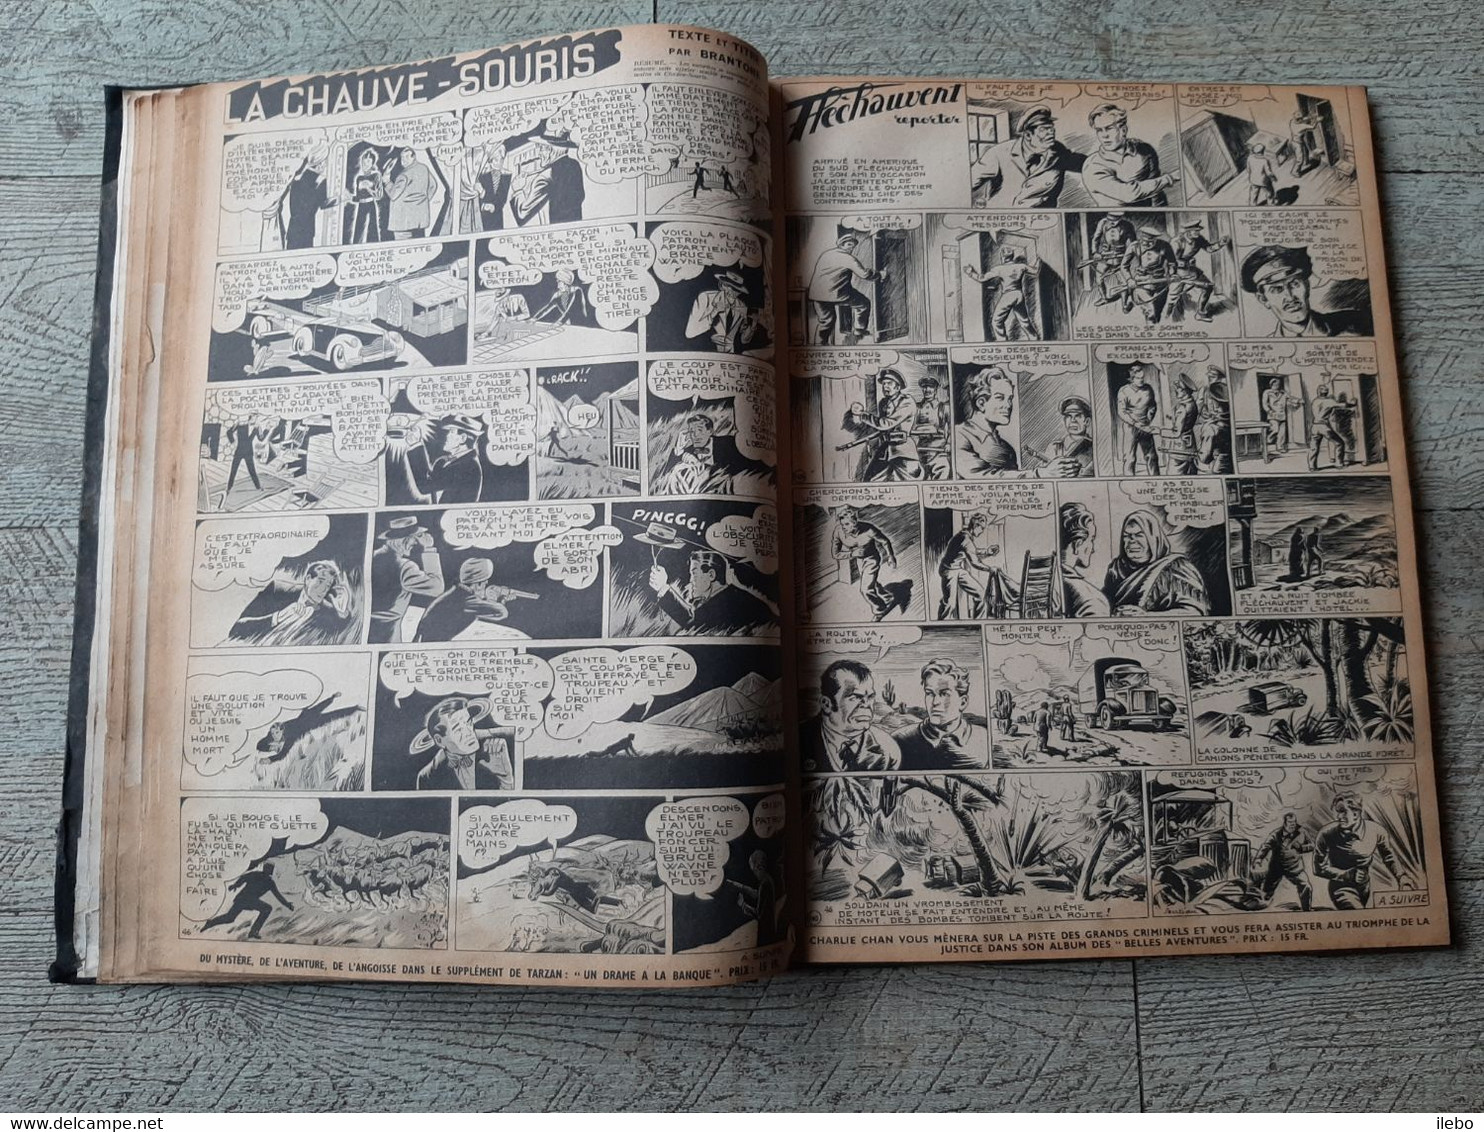 reliure tarzan le grand magazine d'aventures 1947 la chauve souris brantone bande dessinée giffey N°40 au 67